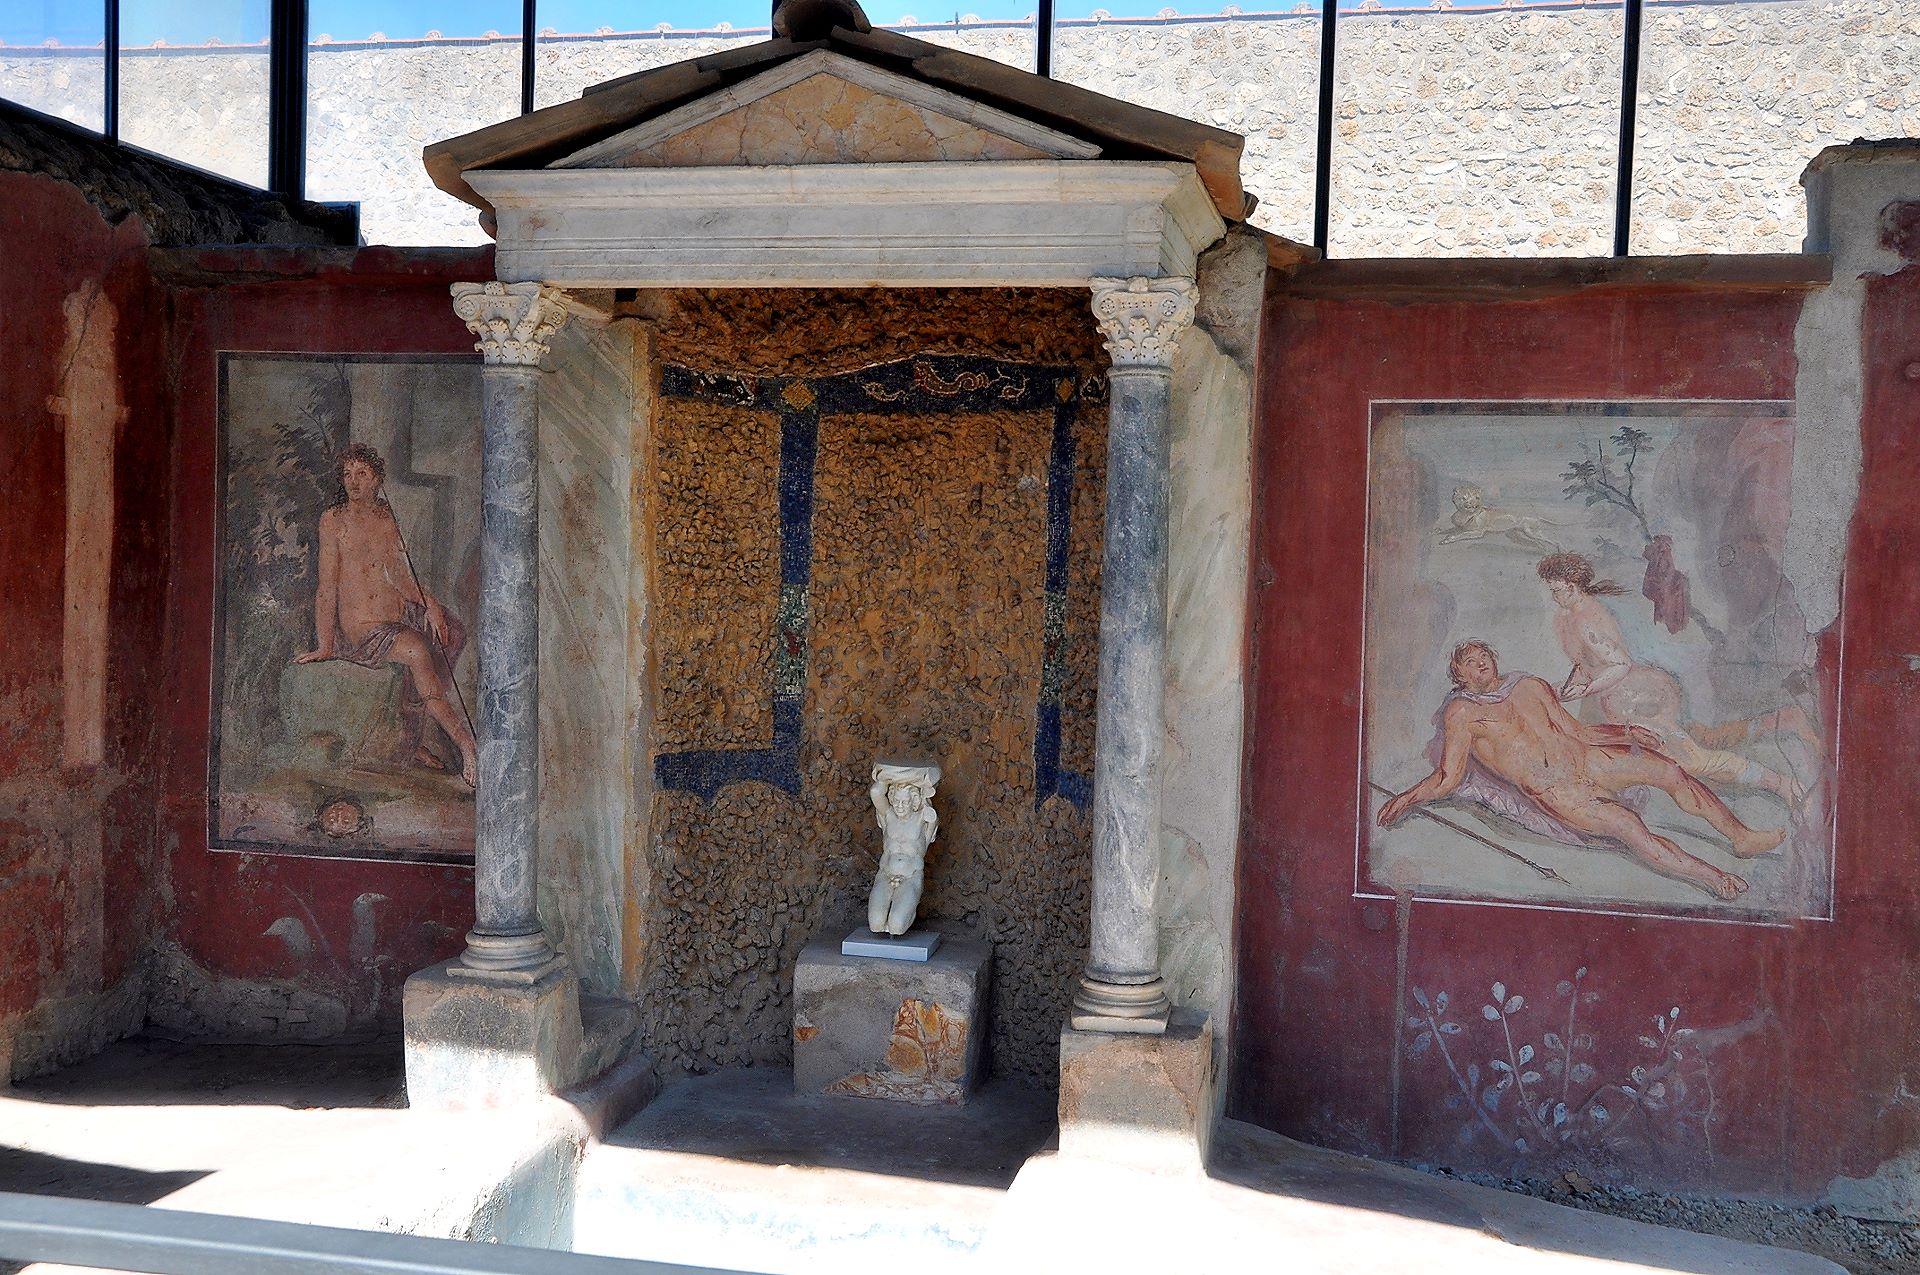 Farbige Kunstwerke in einer römischen Villa in der Stadt Pompeji